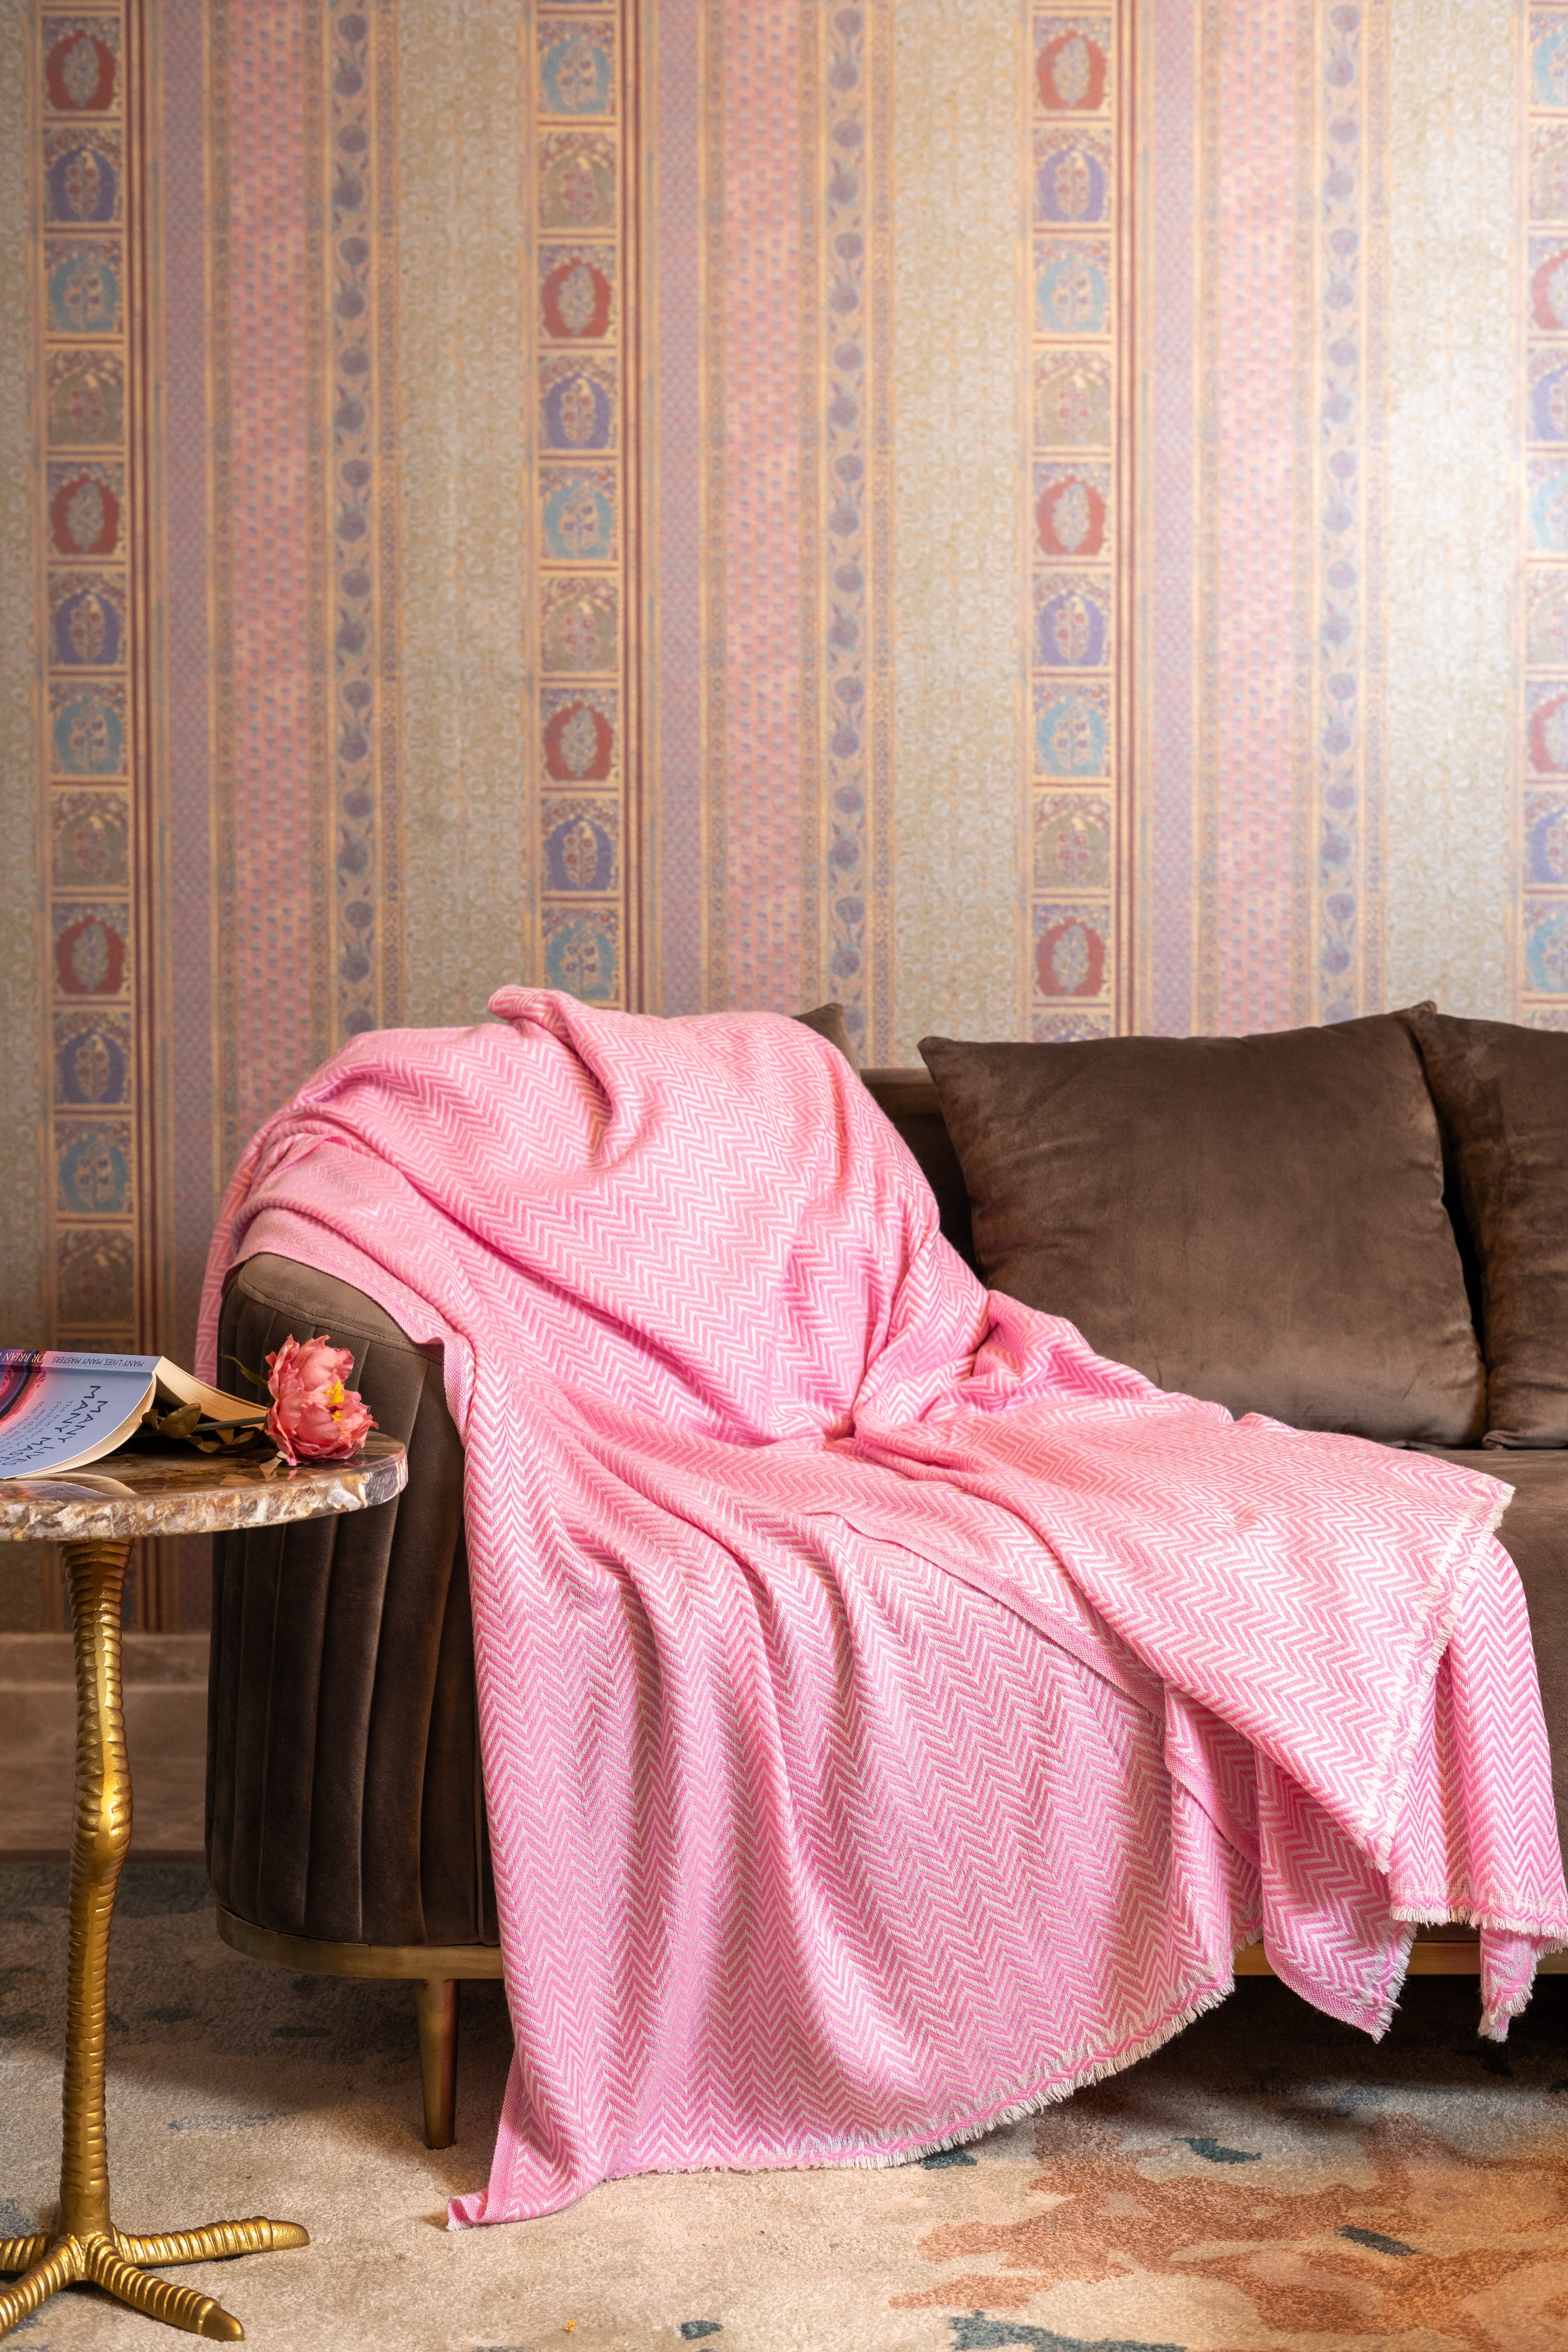 OMVAI Zig Zag Patterned Woven Throw Blanket / Comforter Flamboyant Fuchsia